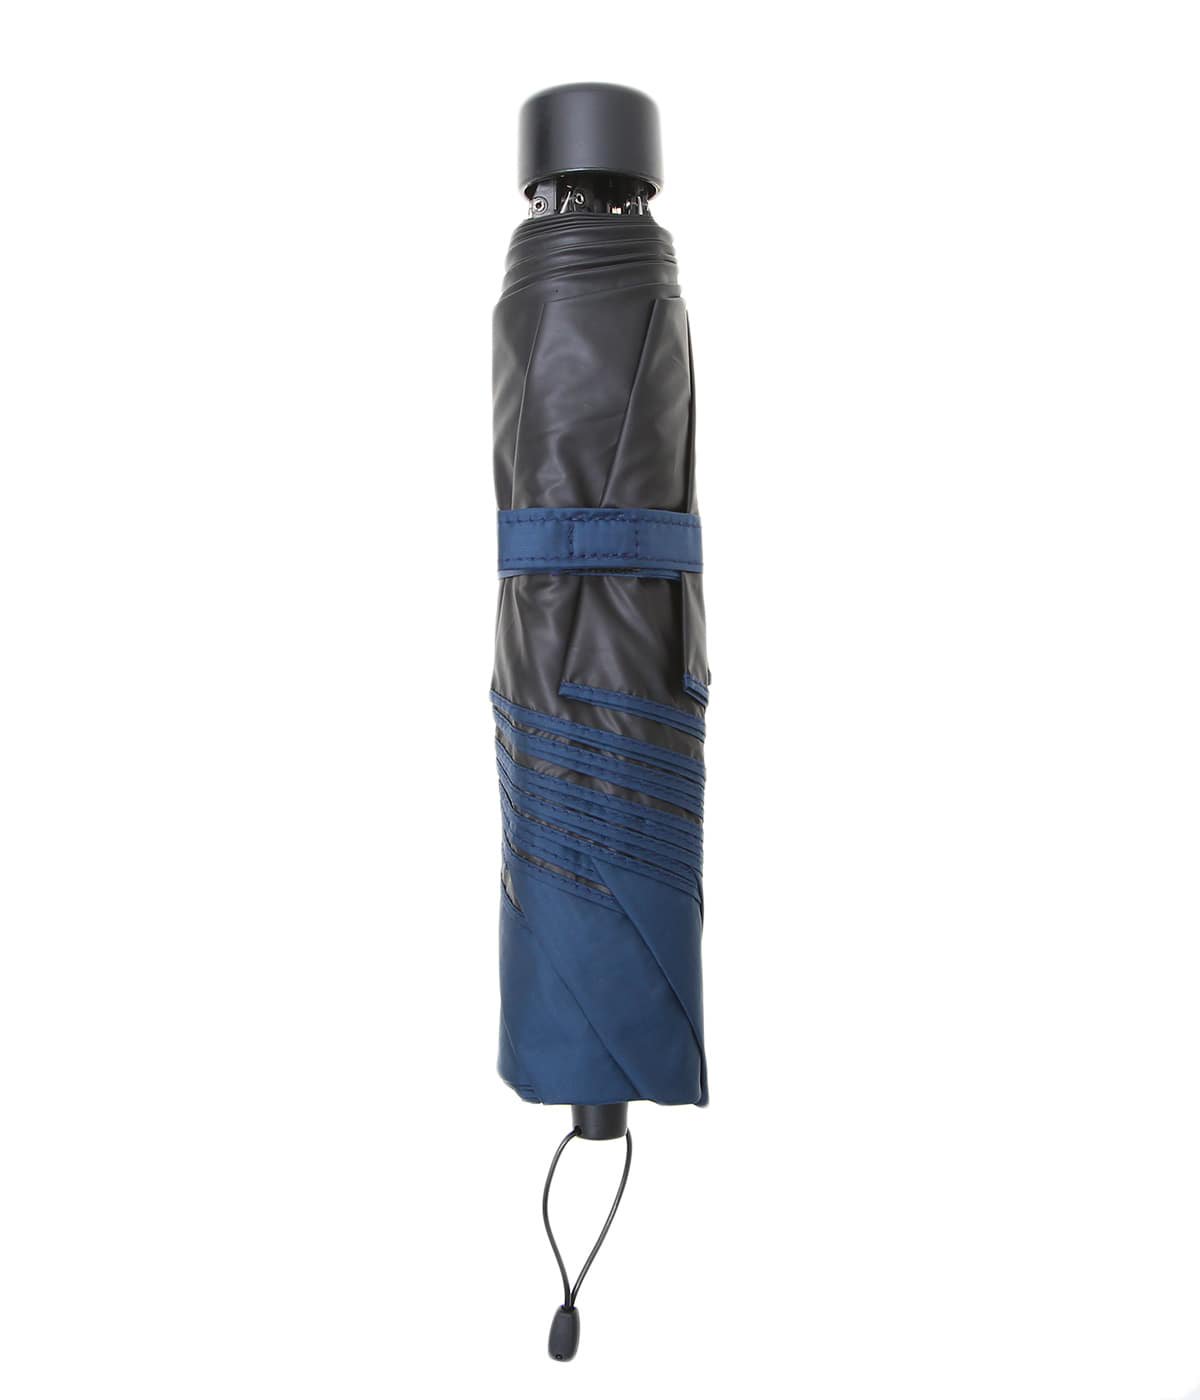 トラベル サンブロックアンブレラ 50 / 折りたたみ傘